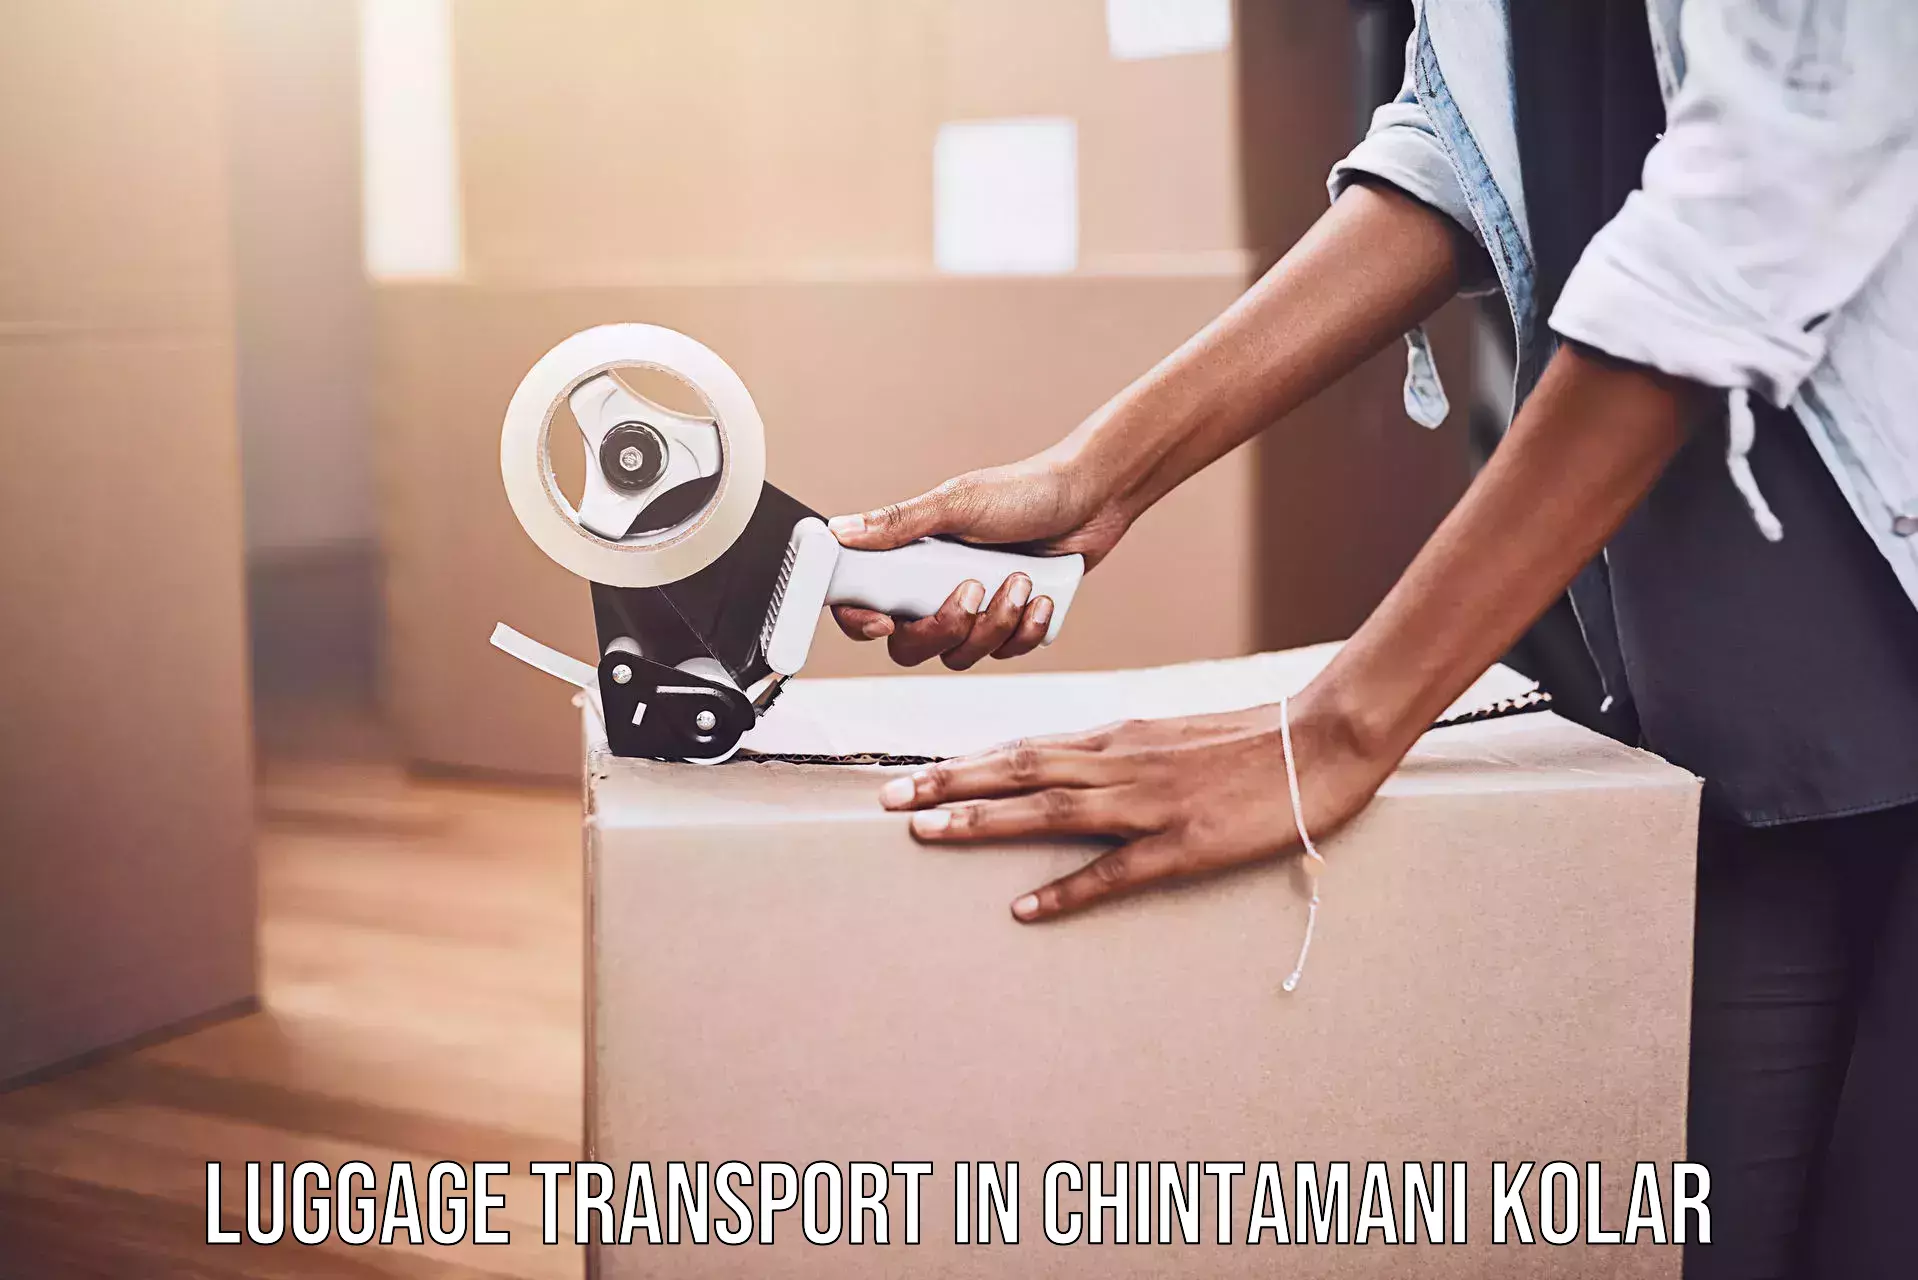 Custom luggage shipping in Chintamani Kolar